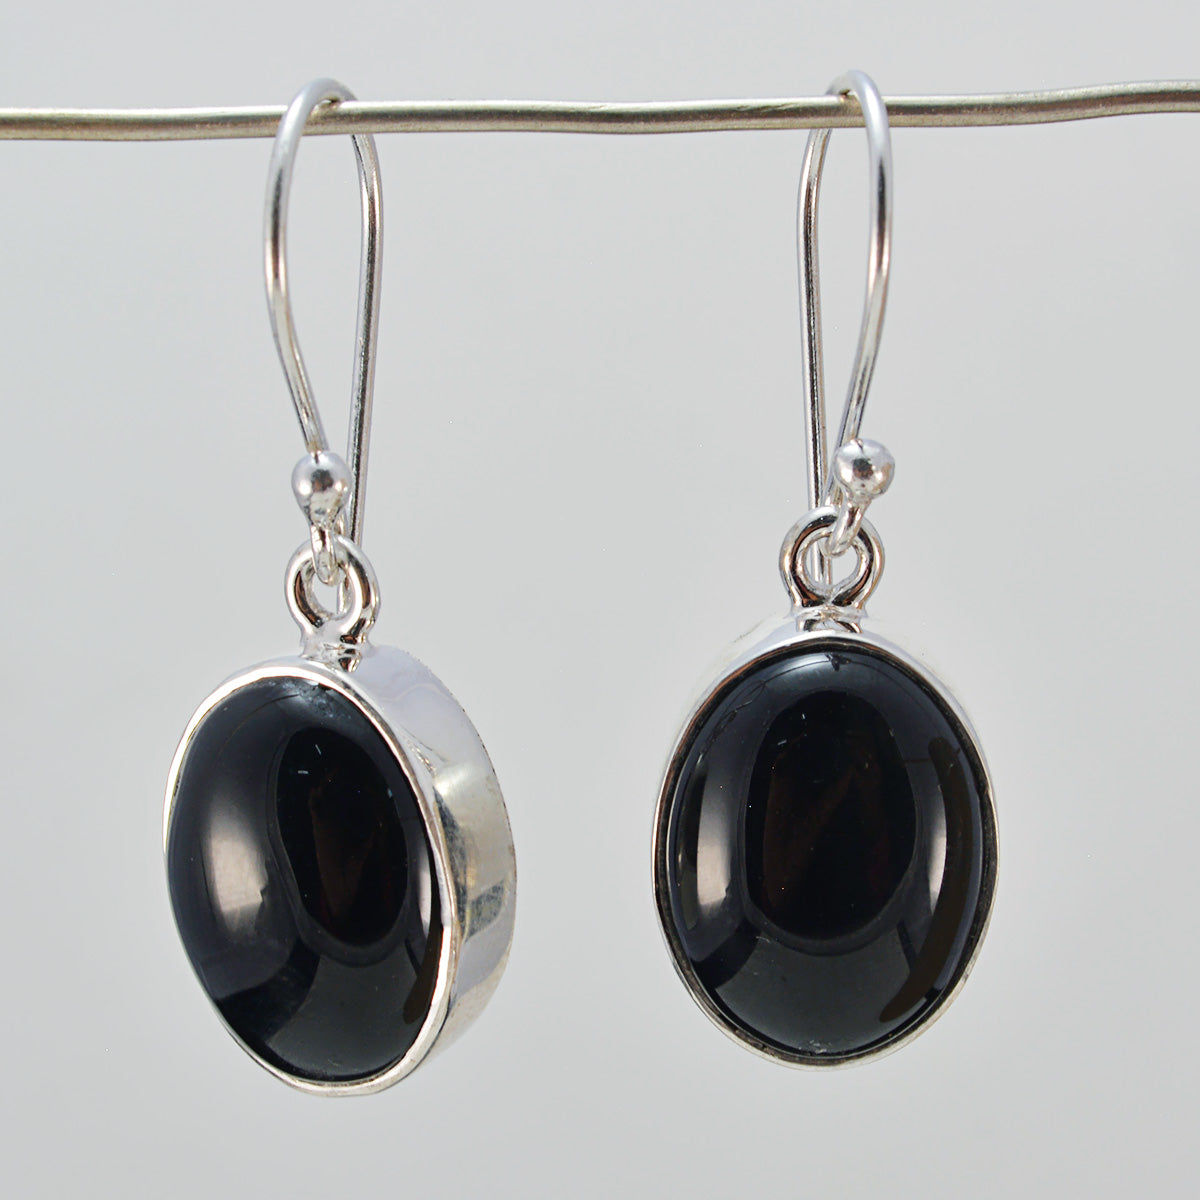 Riyo Genuine Gems round Cabochon Black Onyx Silver Earring gift for women